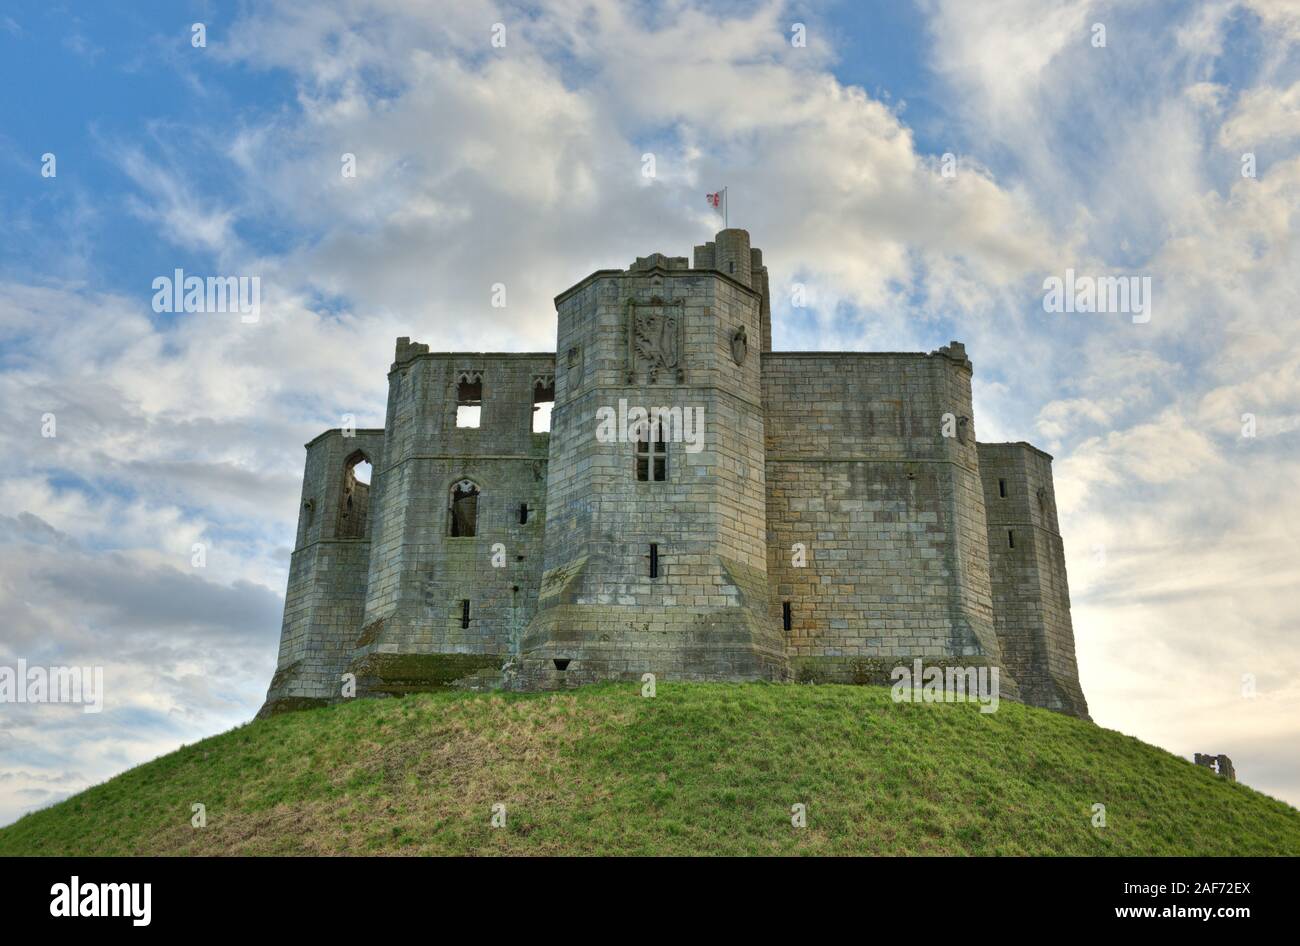 Ruines du donjon et armoiries du château de Warkworth situé sur la colline de premier plan. Northumberland, Angleterre Banque D'Images